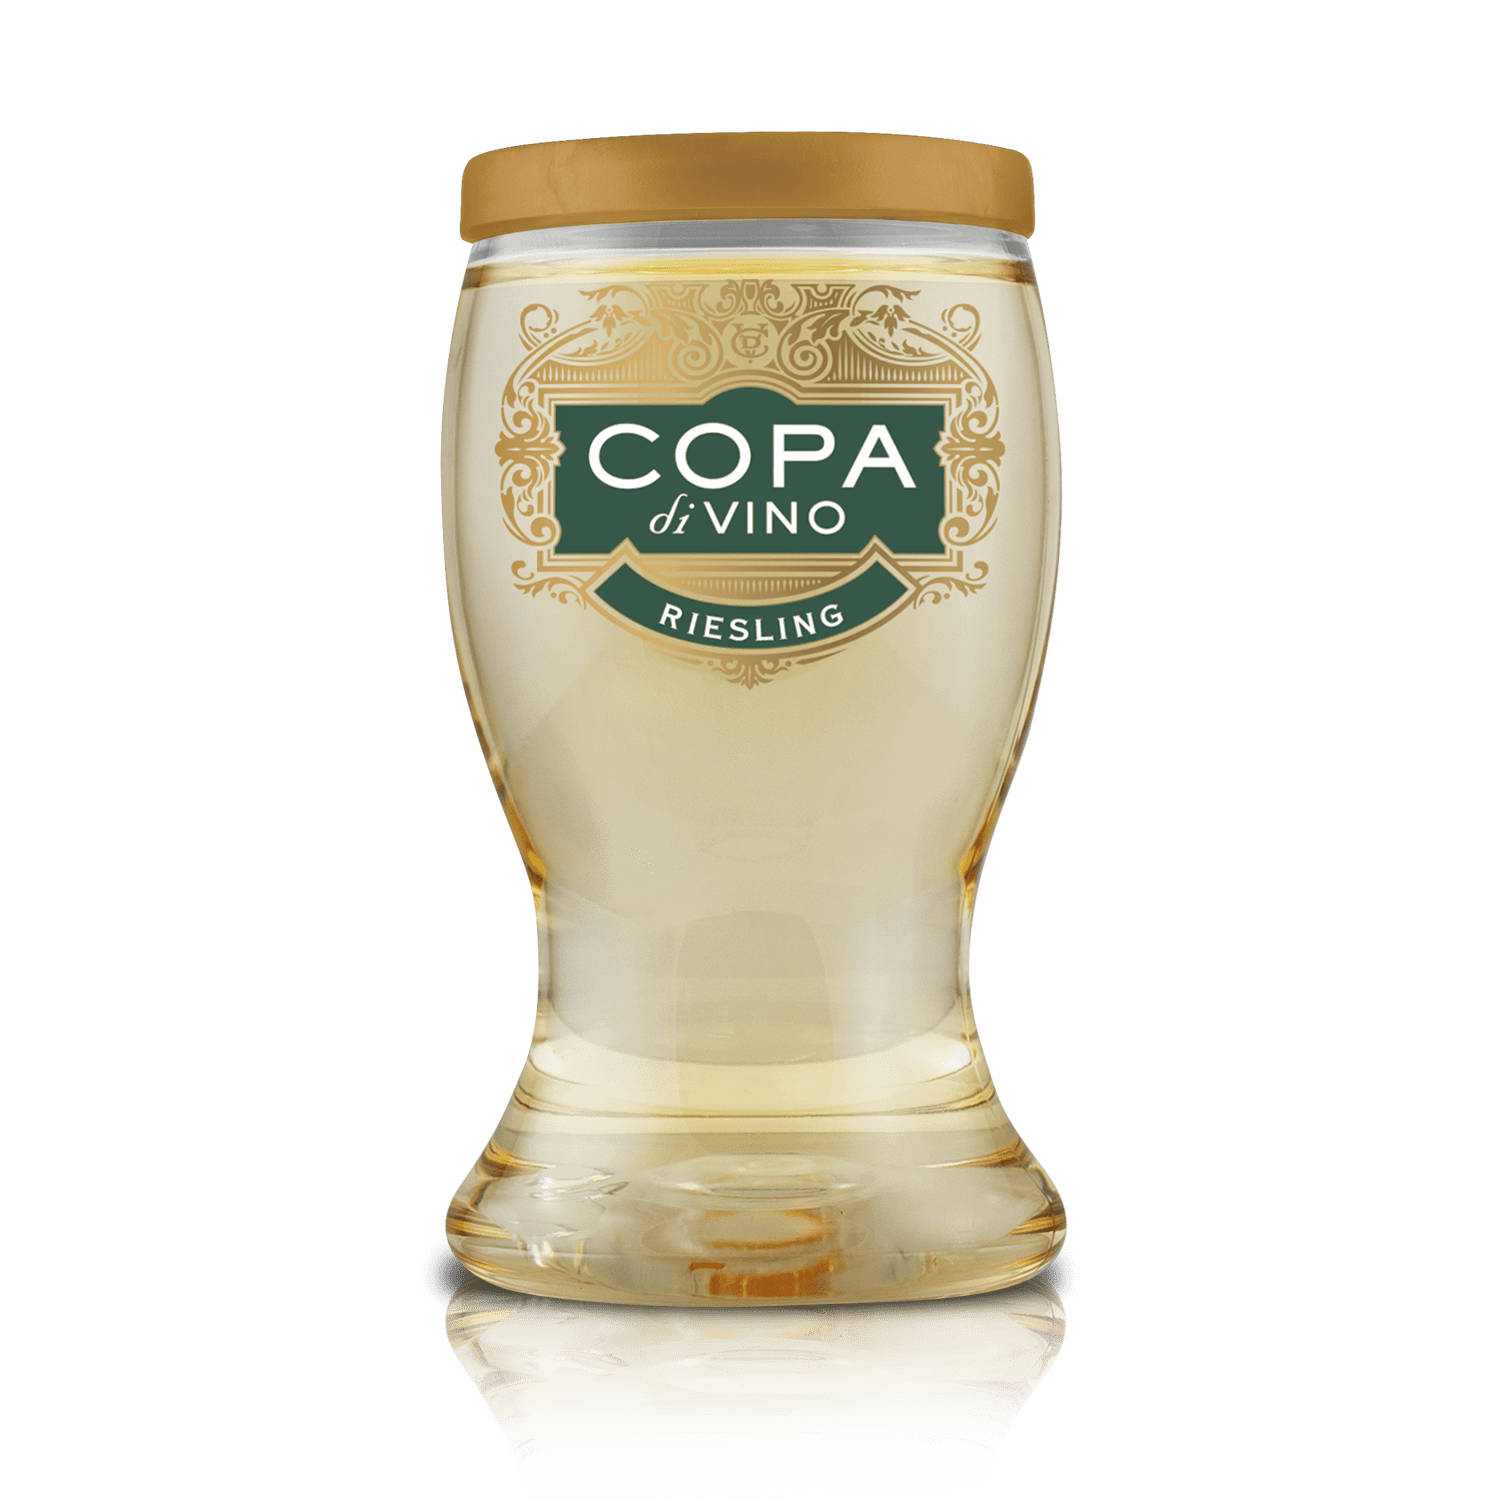 Copa di Vino: A Review